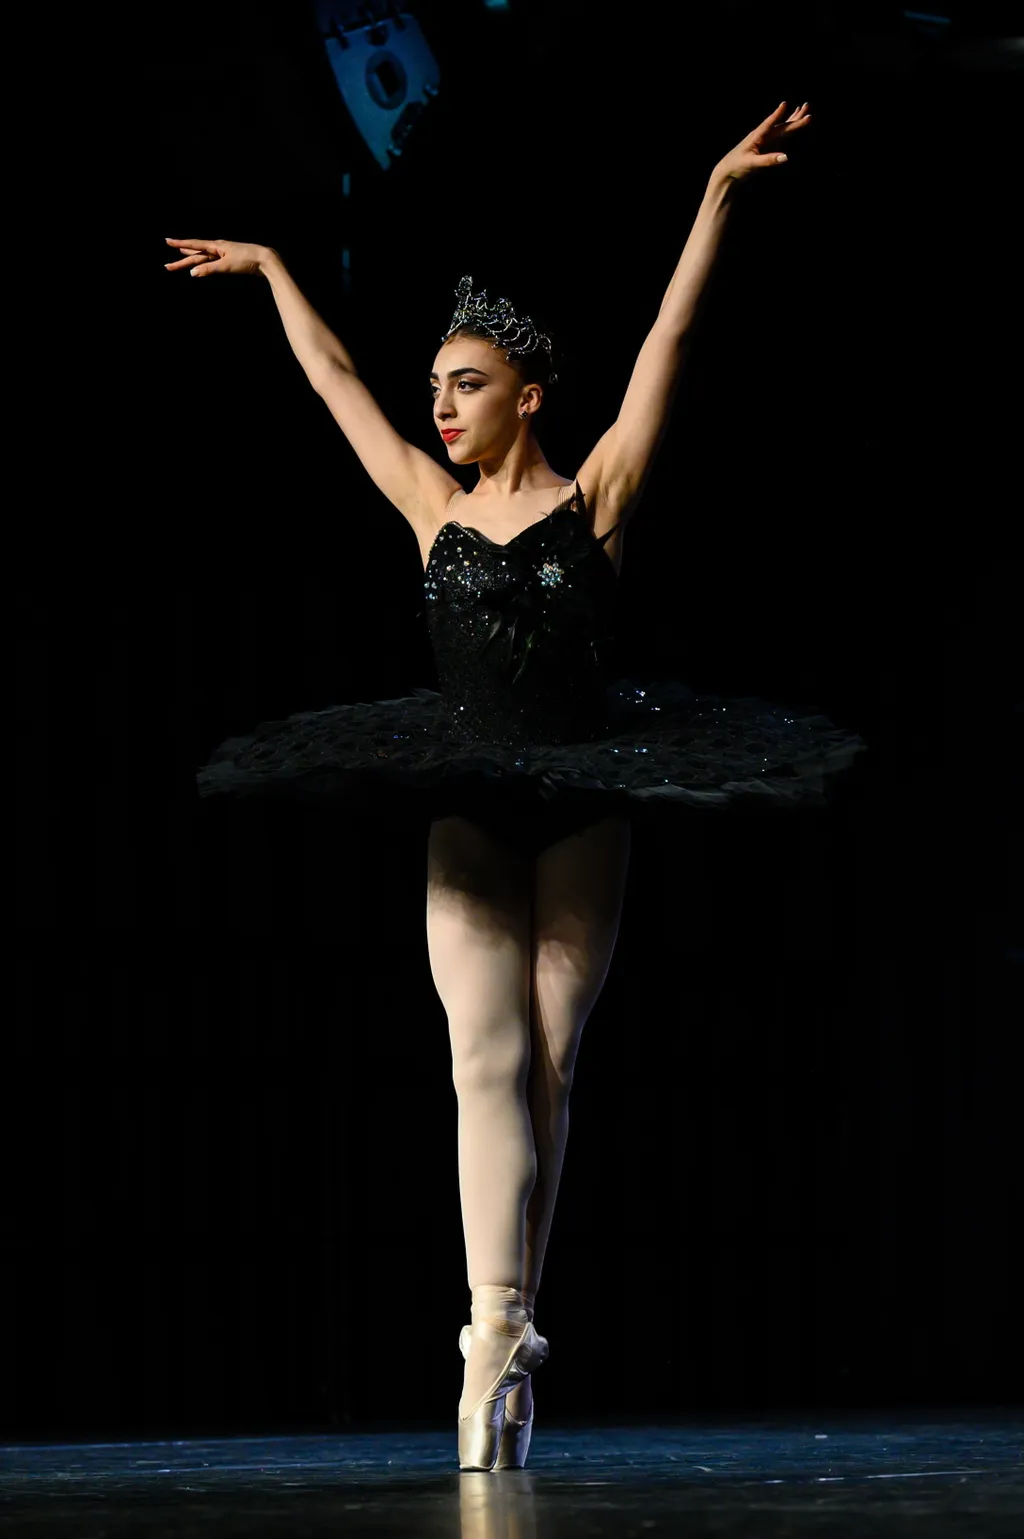 RIQUITO, Clara balerina balett-táncos CSELEKVÉS egész alakos fotó FOTÓ KÉPKIVÁGÁS Közéleti személyiség foglalkozása művész SZEMÉLY táncol, Balett, Veszprém, 2023. június 26., Magyar Nemzeti Balettintézet igazgatója, Hungarian Ballet Grand Prix 